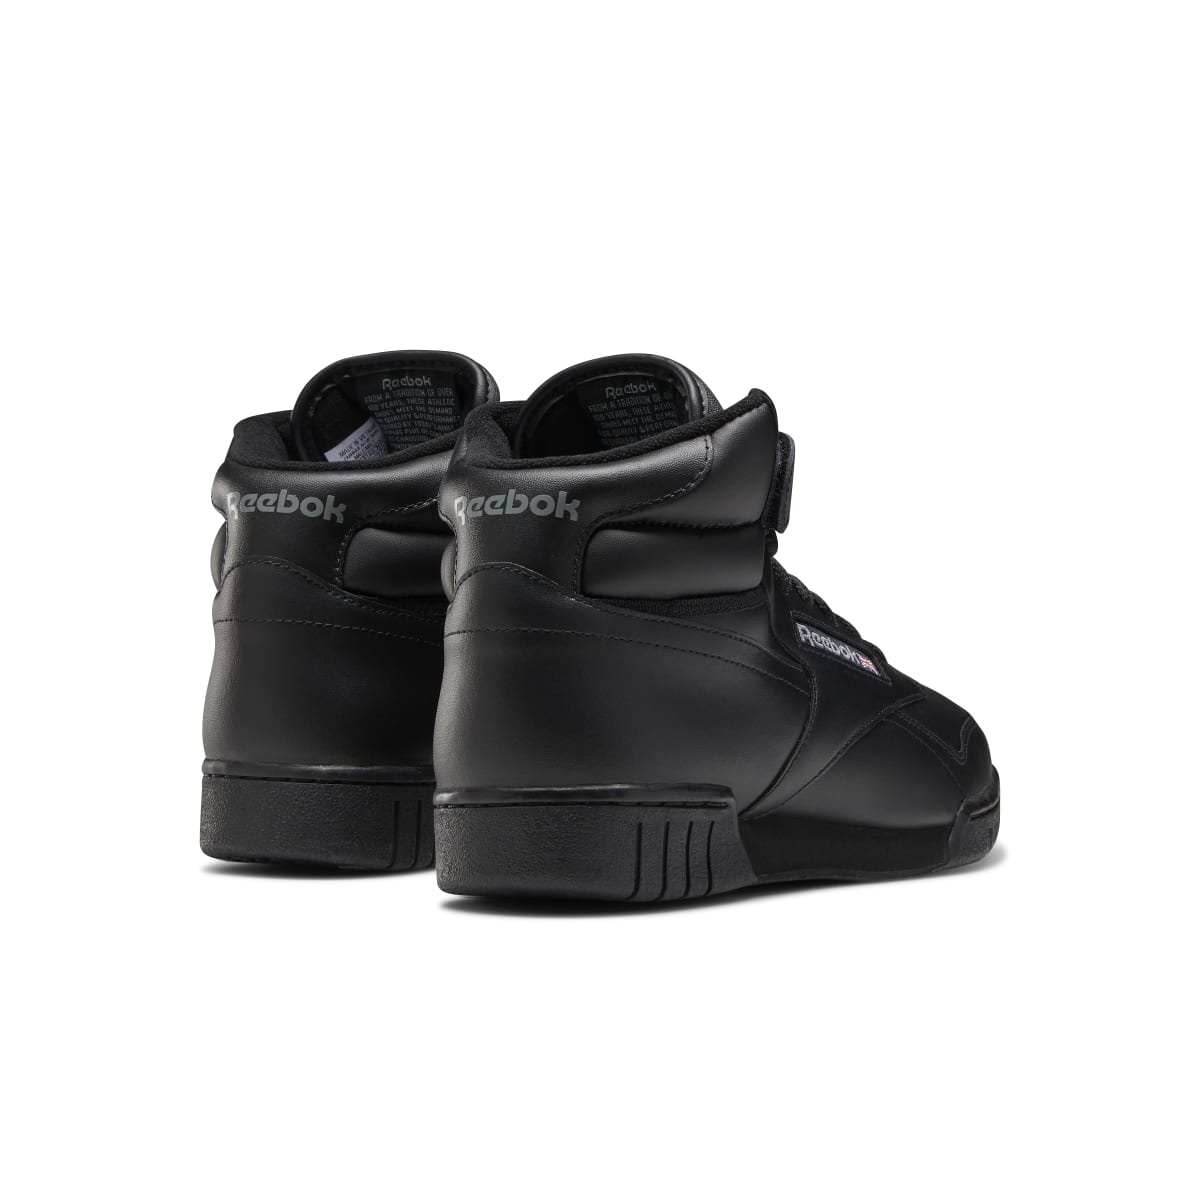 REEBOK EX-O-FIT HI MN'S (Medium) Black Leather Lifestyle – www.kicks-footwear.com